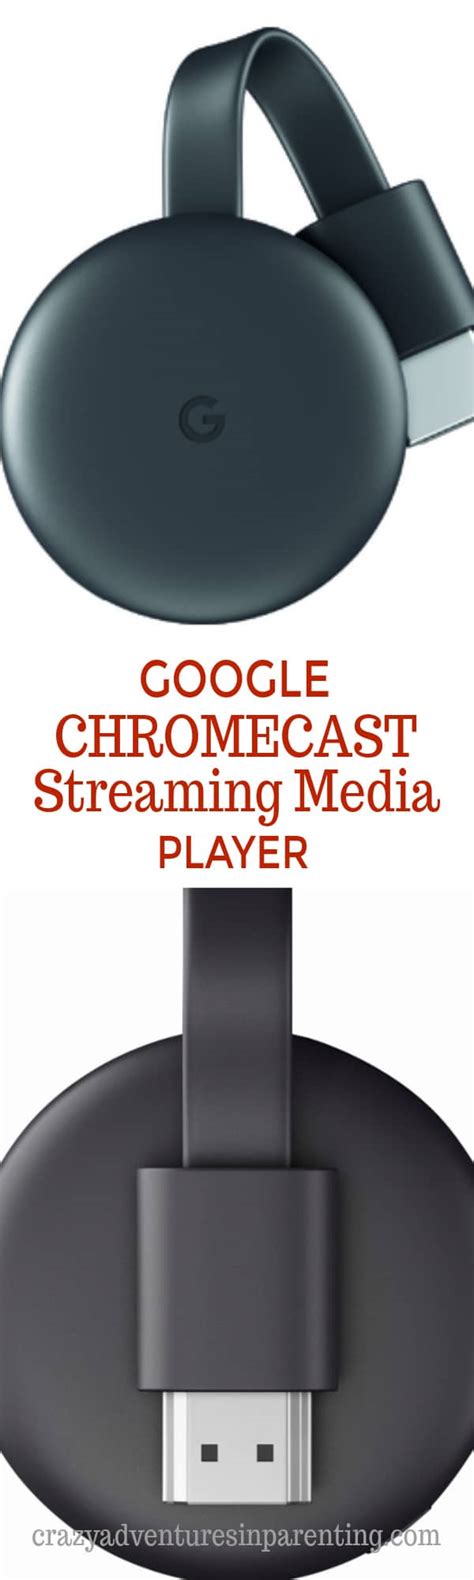 google chromecast  media player crazy adventures  parenting